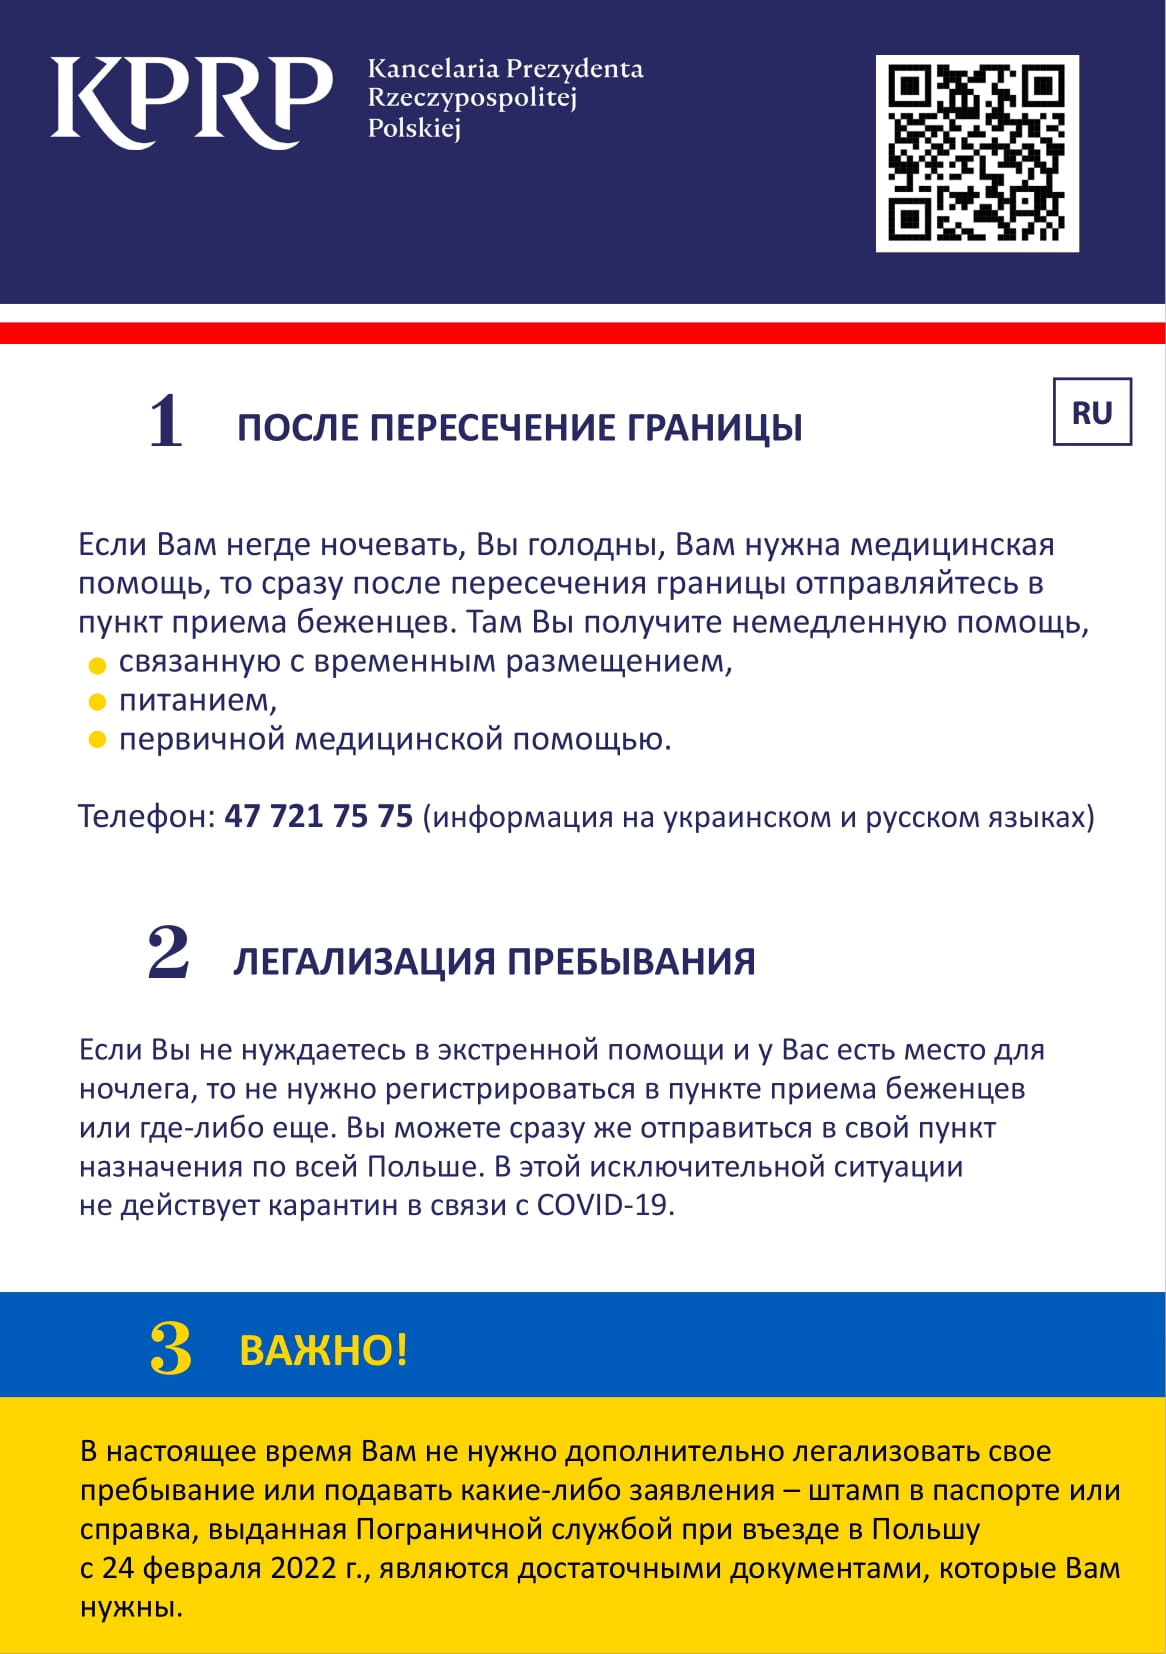 Kilka przydatnych informacji dla osób przyjeżdżających z Ukrainy po rosyjsku